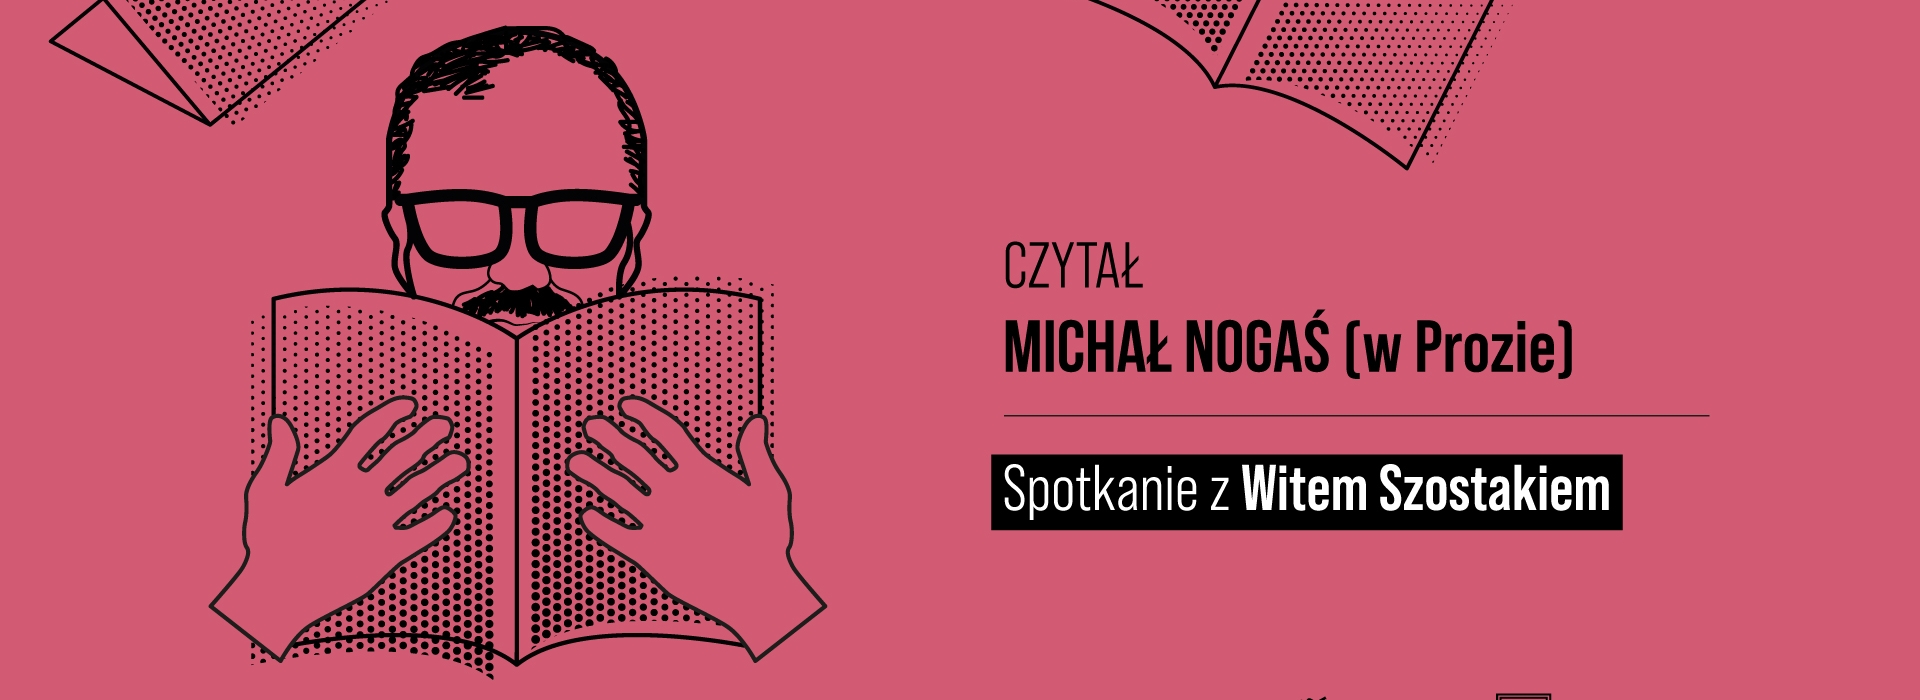 Wrocławski Dom Literatury - Czytał Michał Nogaś (w Prozie): Wit Szostak